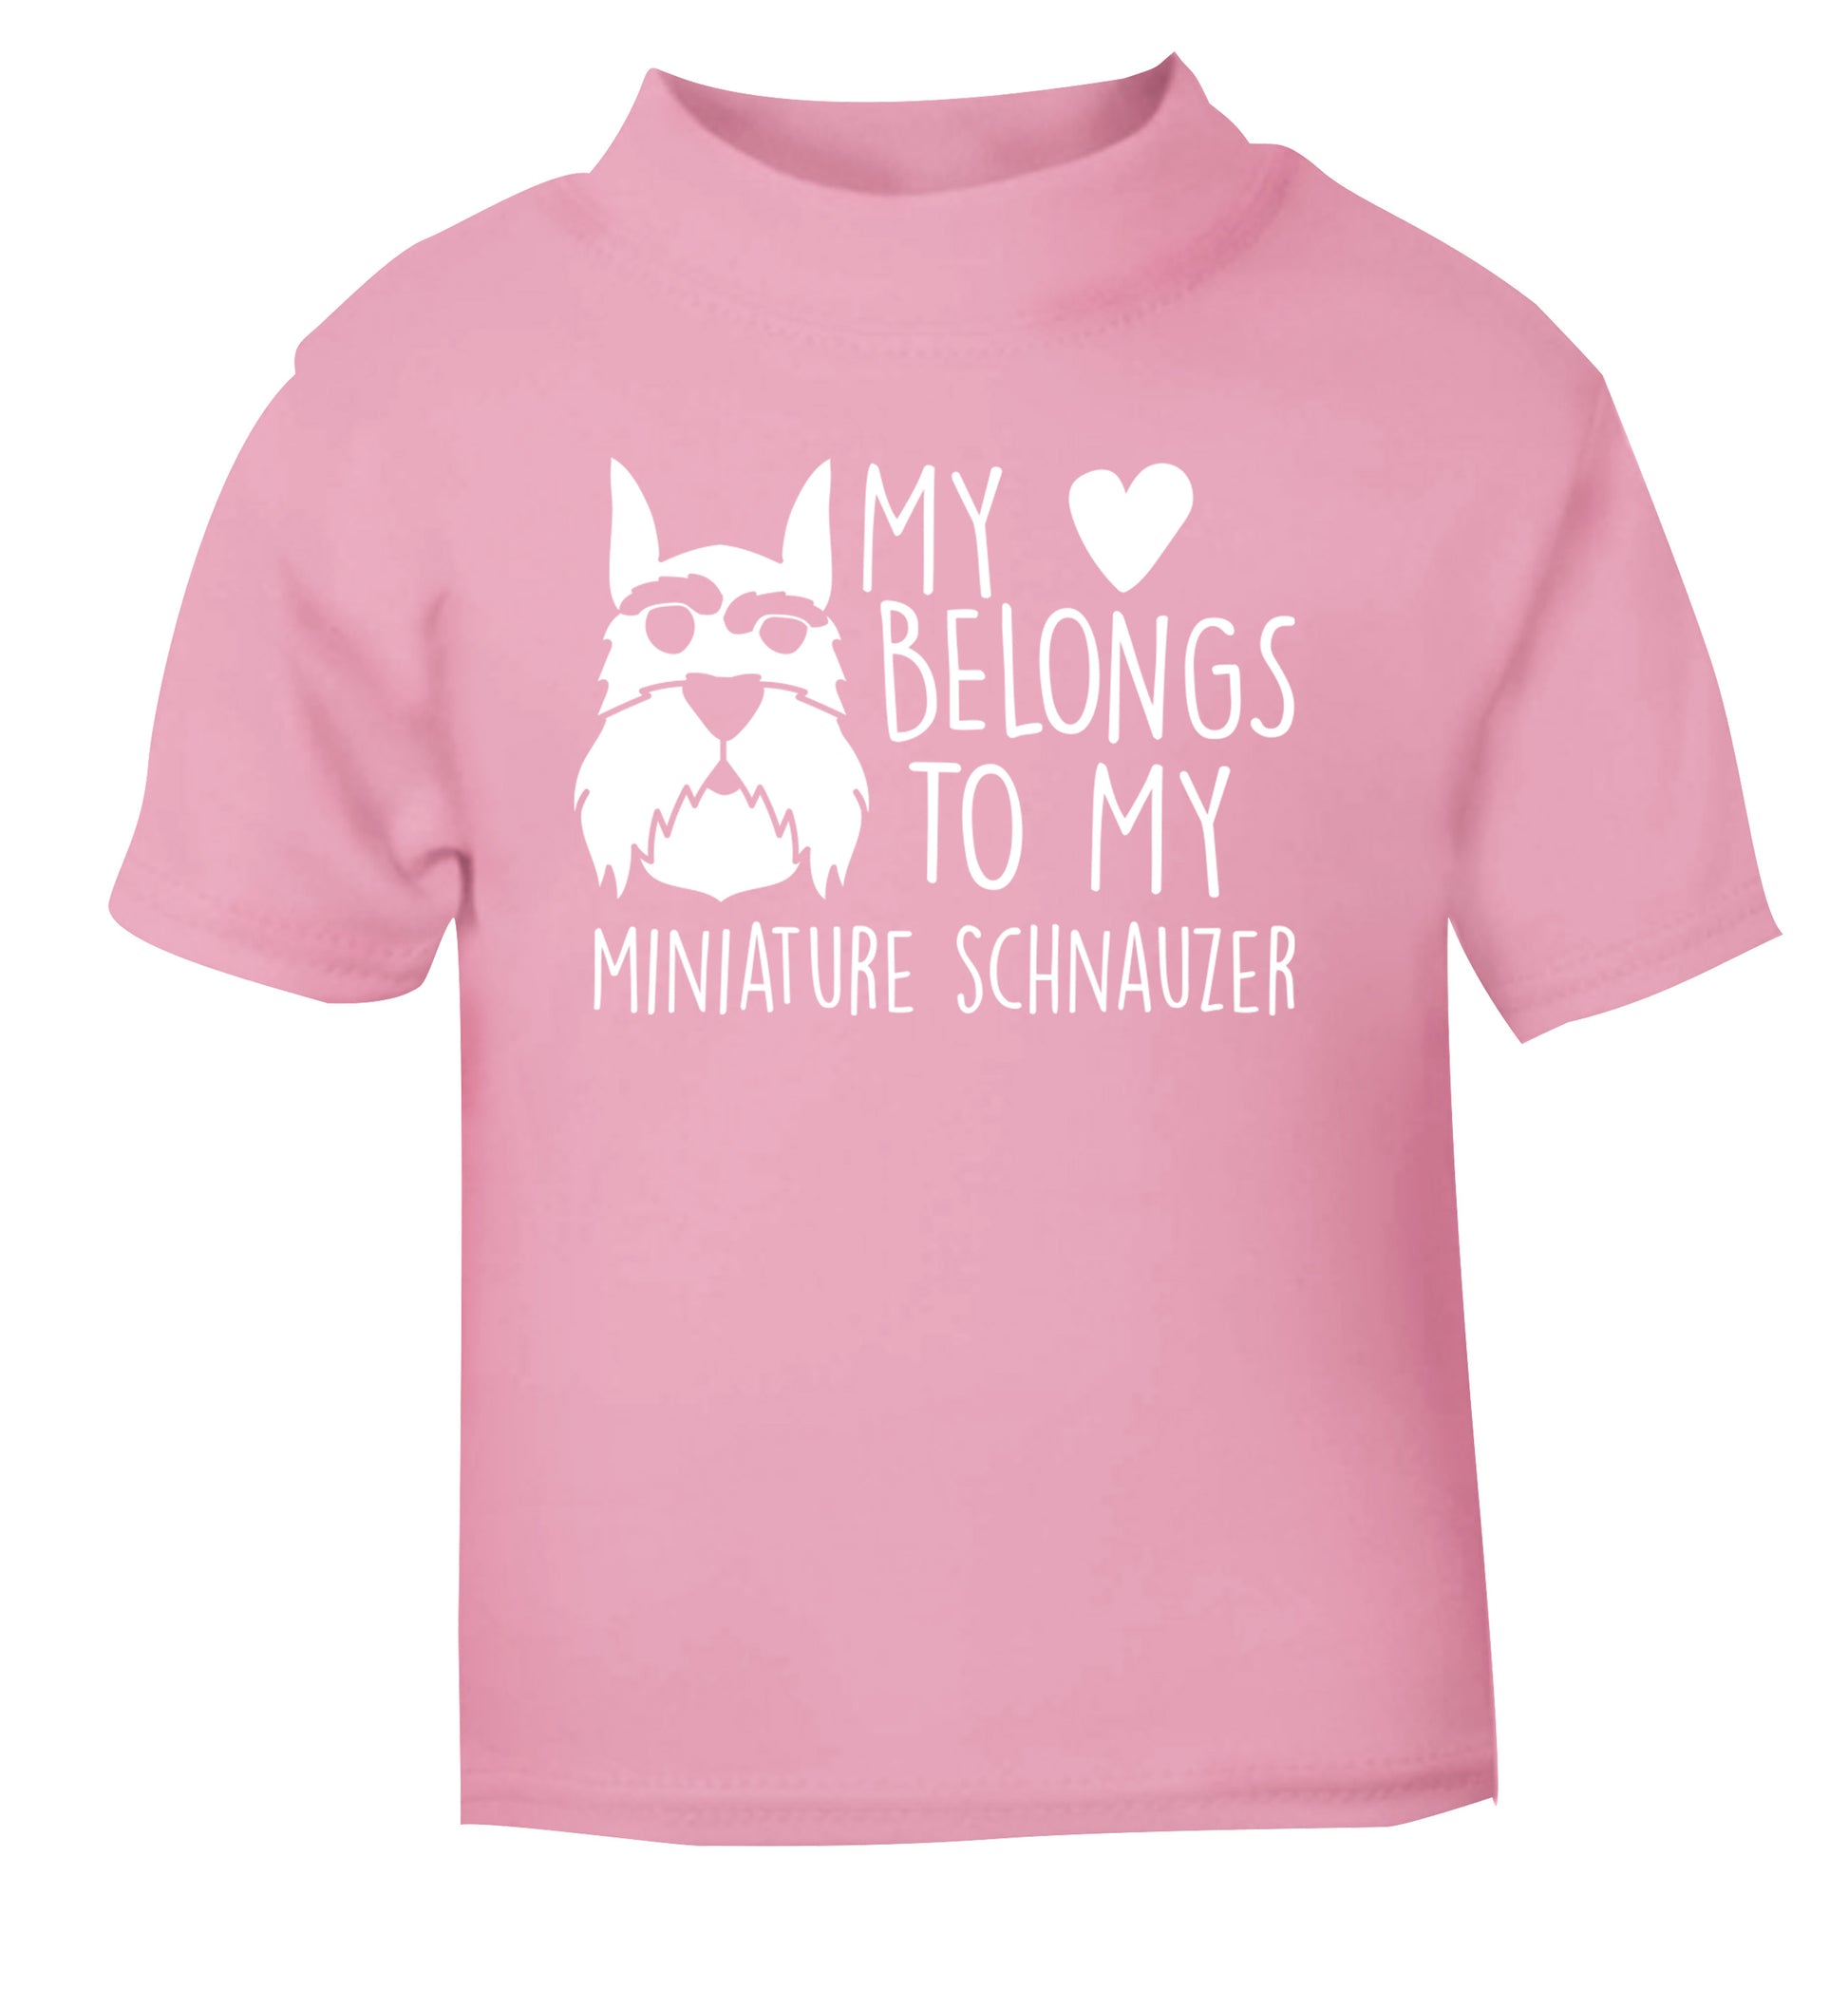 My heart belongs to my miniature schnauzer light pink Baby Toddler Tshirt 2 Years